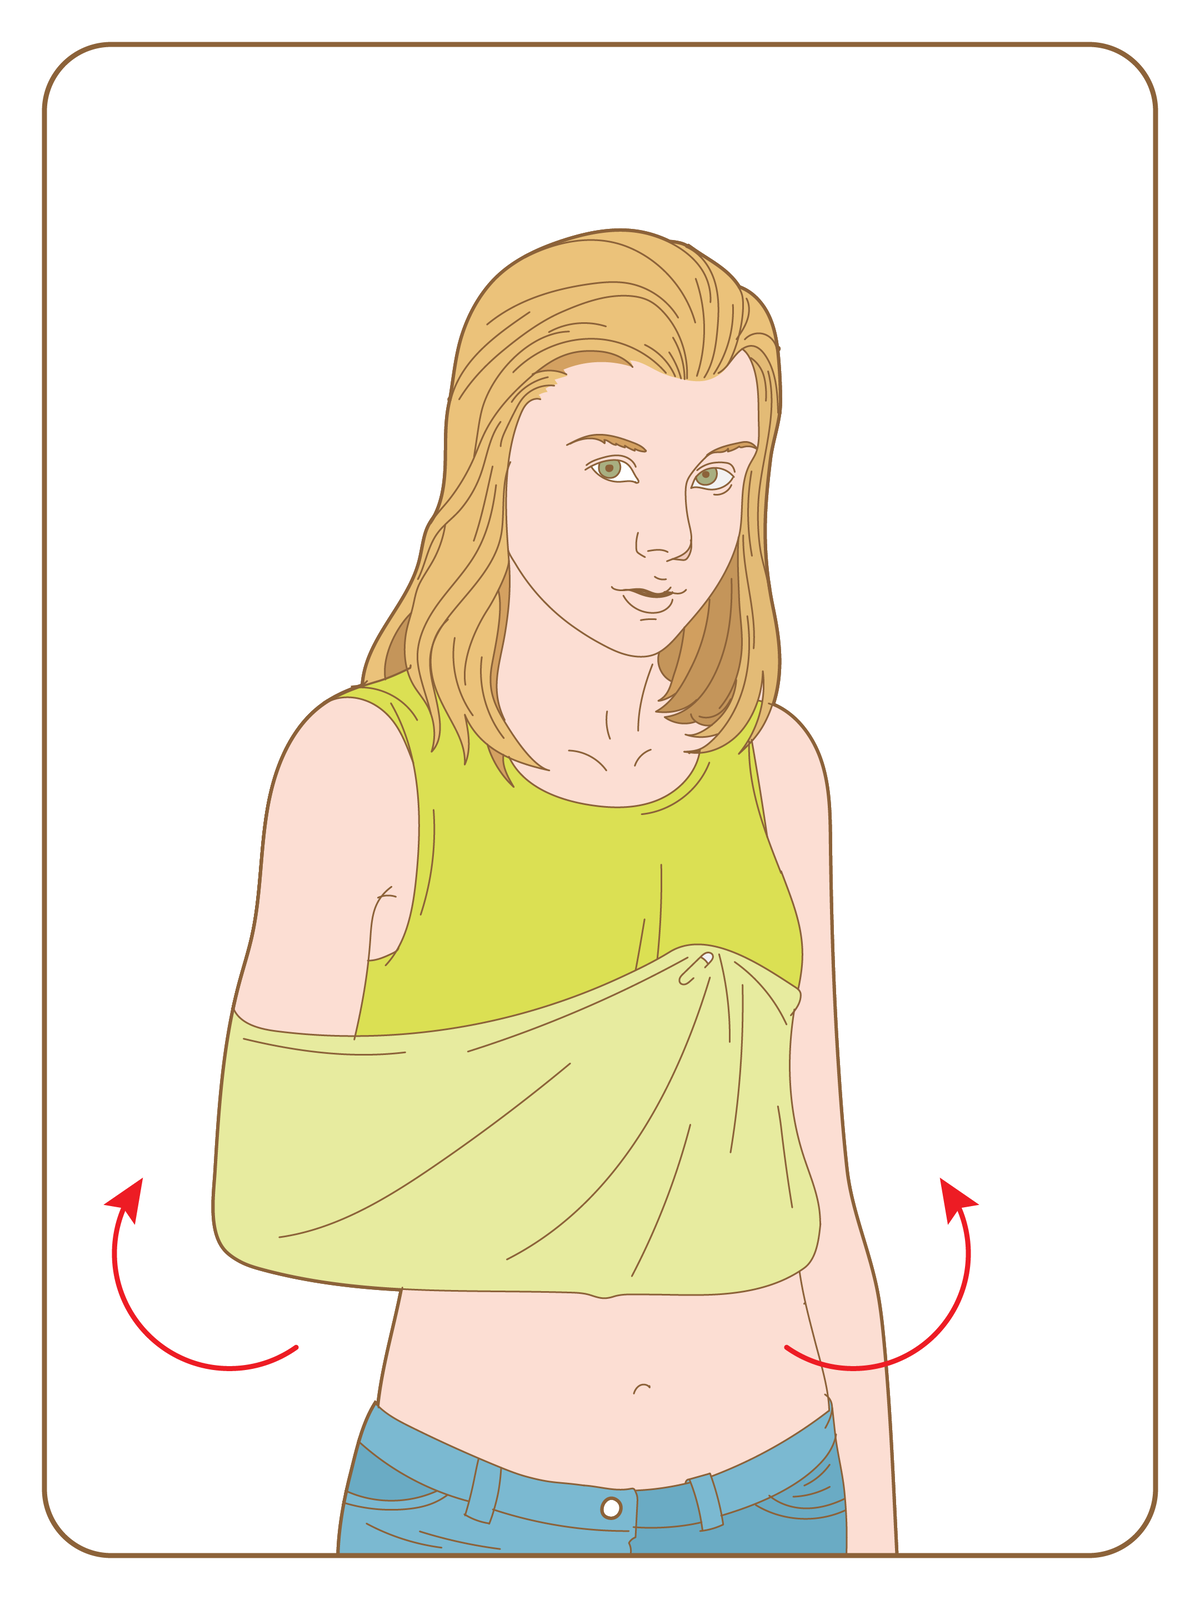 Rysunek przedstawia drugi etap unieruchamiania za pomocą ubrania poszkodowanego. Na ilustracji młoda dziewczyna stoi przodem do obserwatora, a jej prawa ręka jest zgięta w łokciu pod kątem dziewięćdziesięciu stopni, z przedramieniem poziomo na wysokości pasa. Dolna część podkoszulki zawinięta do góry, dwie czerwone strzałki w górę przy łokciu i dłoni wskazują kierunek zawijania. Dłoń, przedramię, łokieć i dolna część ramienia całkowicie schowane w tym zaimprowizowanym temblaku. Dolny koniec koszulki z okolic dłoni przypięty jest do materiału agrafką na wysokości klatki piersiowej.